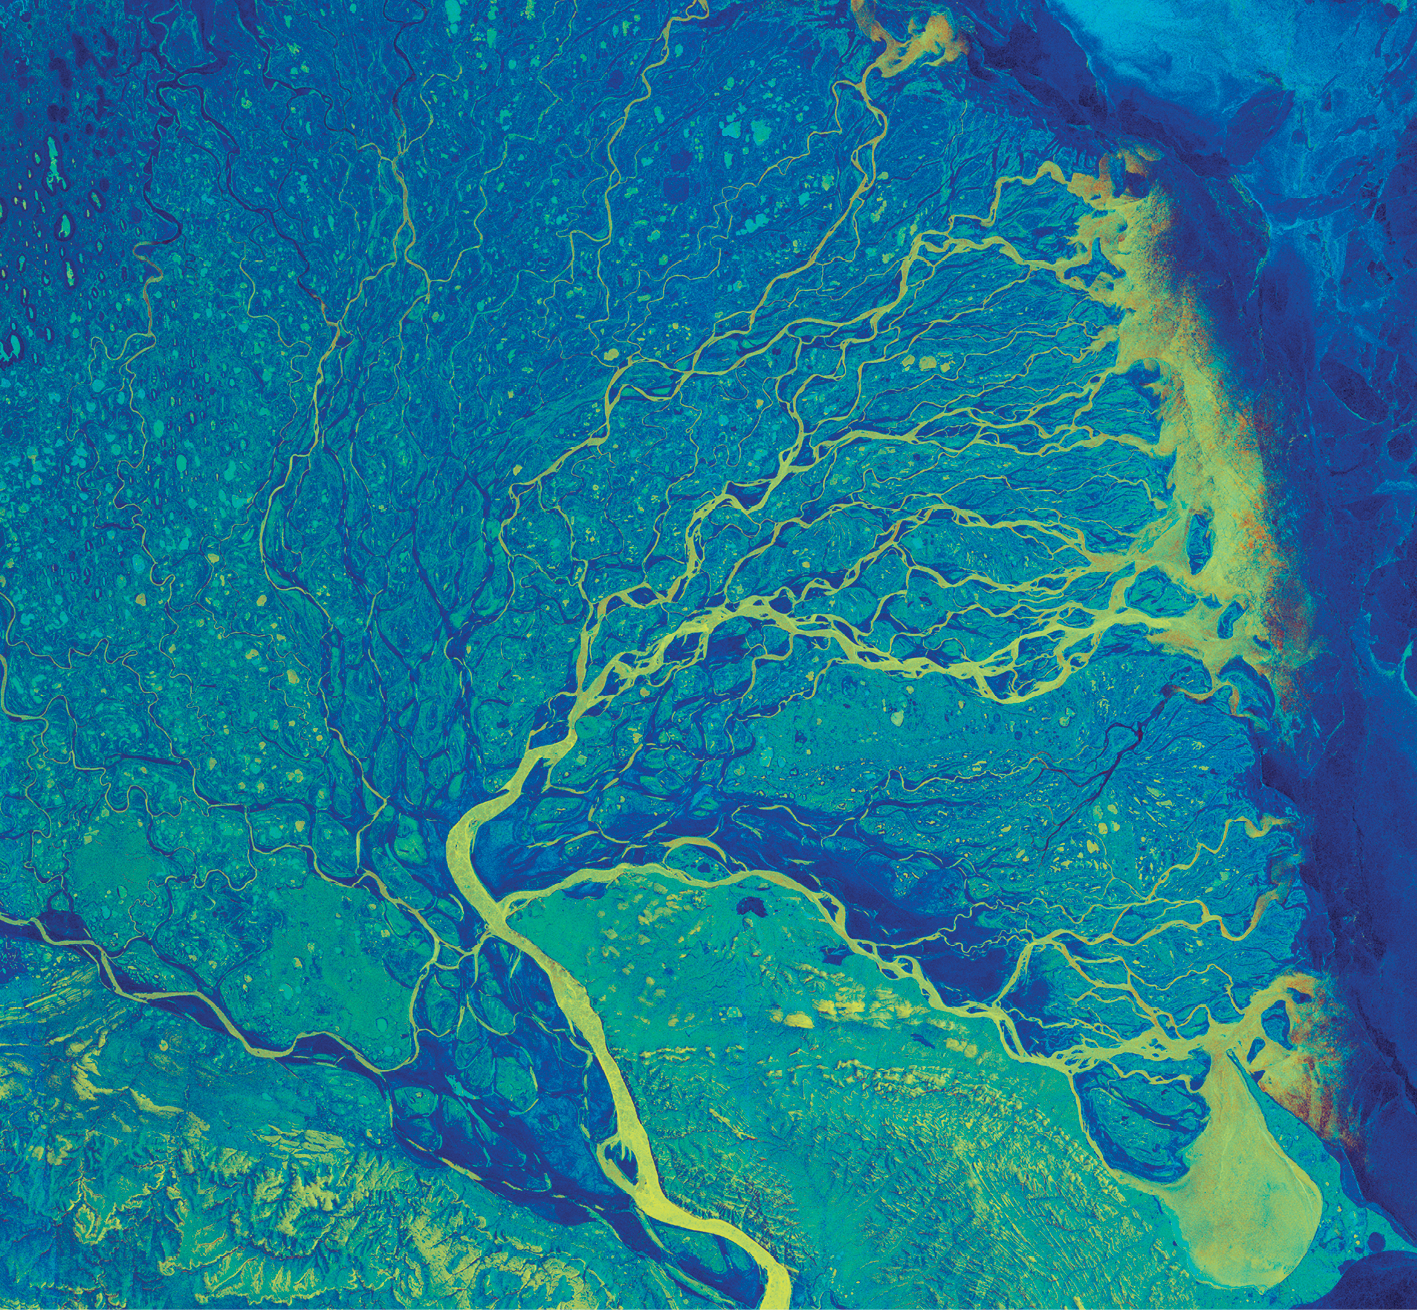 Imagem de satélite. Vista de uma extensa região com diversos cursos de água sinuosos, formando meandros, e que se interligam.